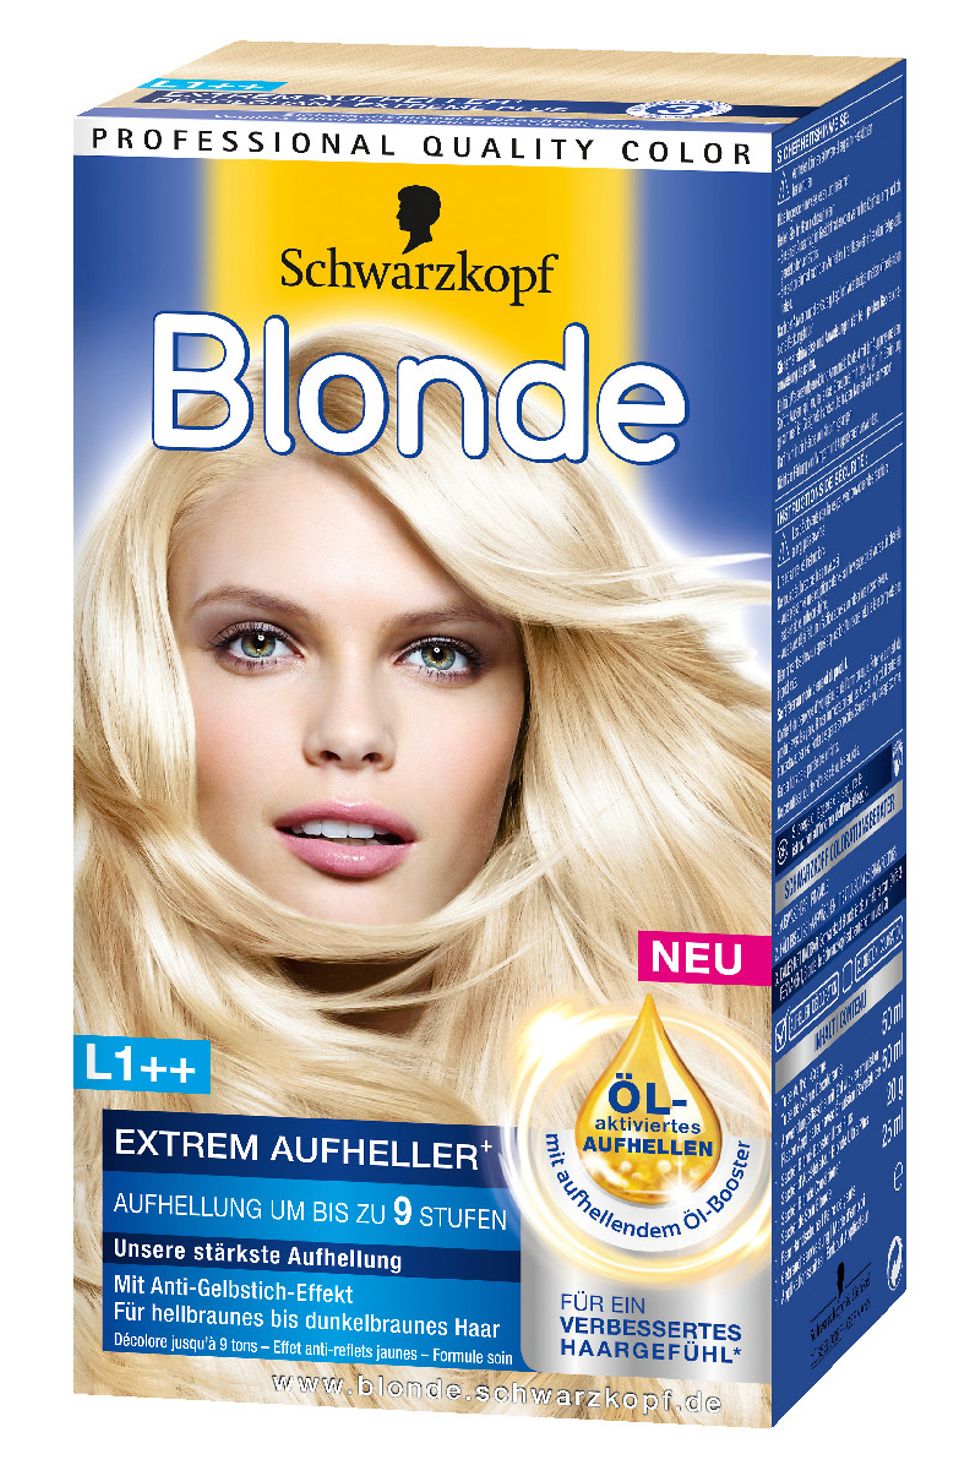 Blonde L1++ Extrem Aufheller für hellbraunes bis dunkelbraunes Haar um bis zu 9 Stufen